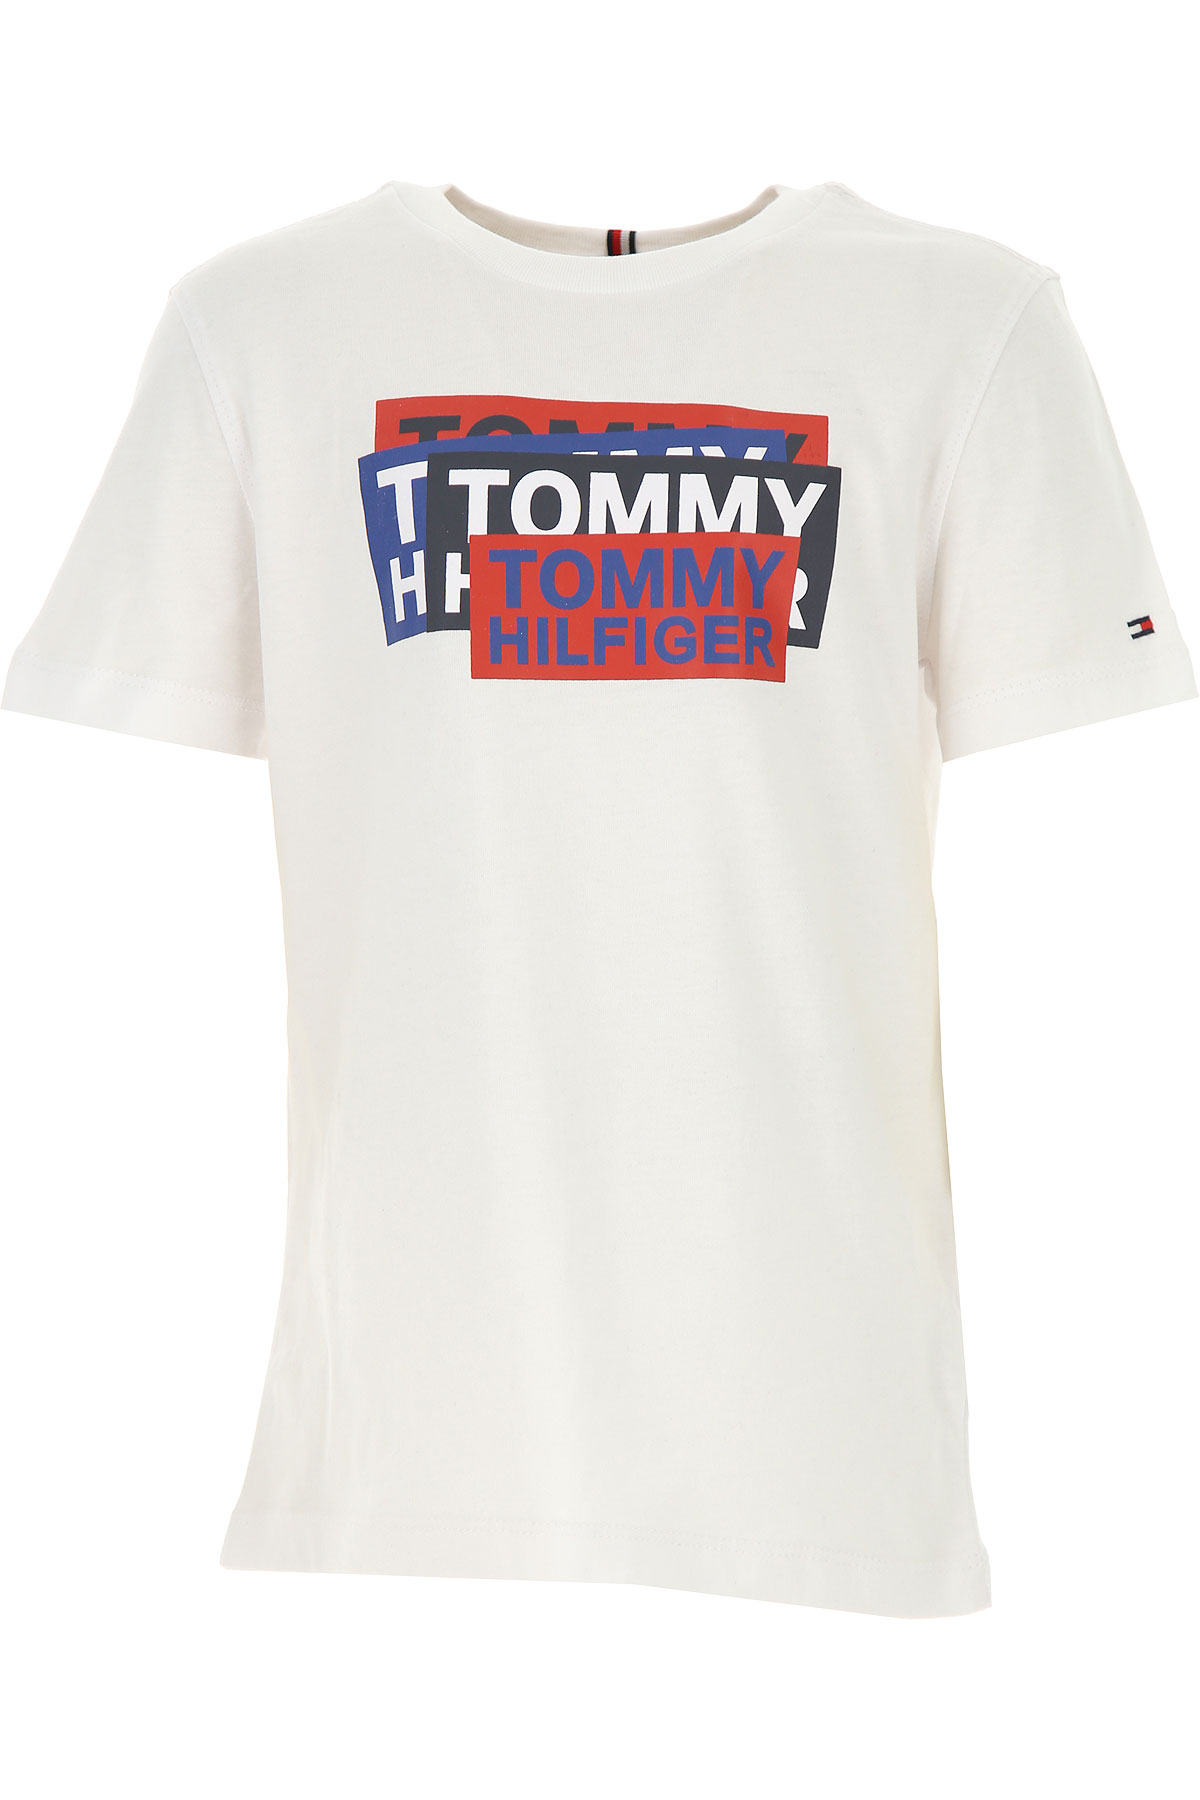 Tommy Hilfiger Kinder T-Shirt für Jungen Günstig im Sale, Weiss, Baumwolle, 2017, 12Y 8Y